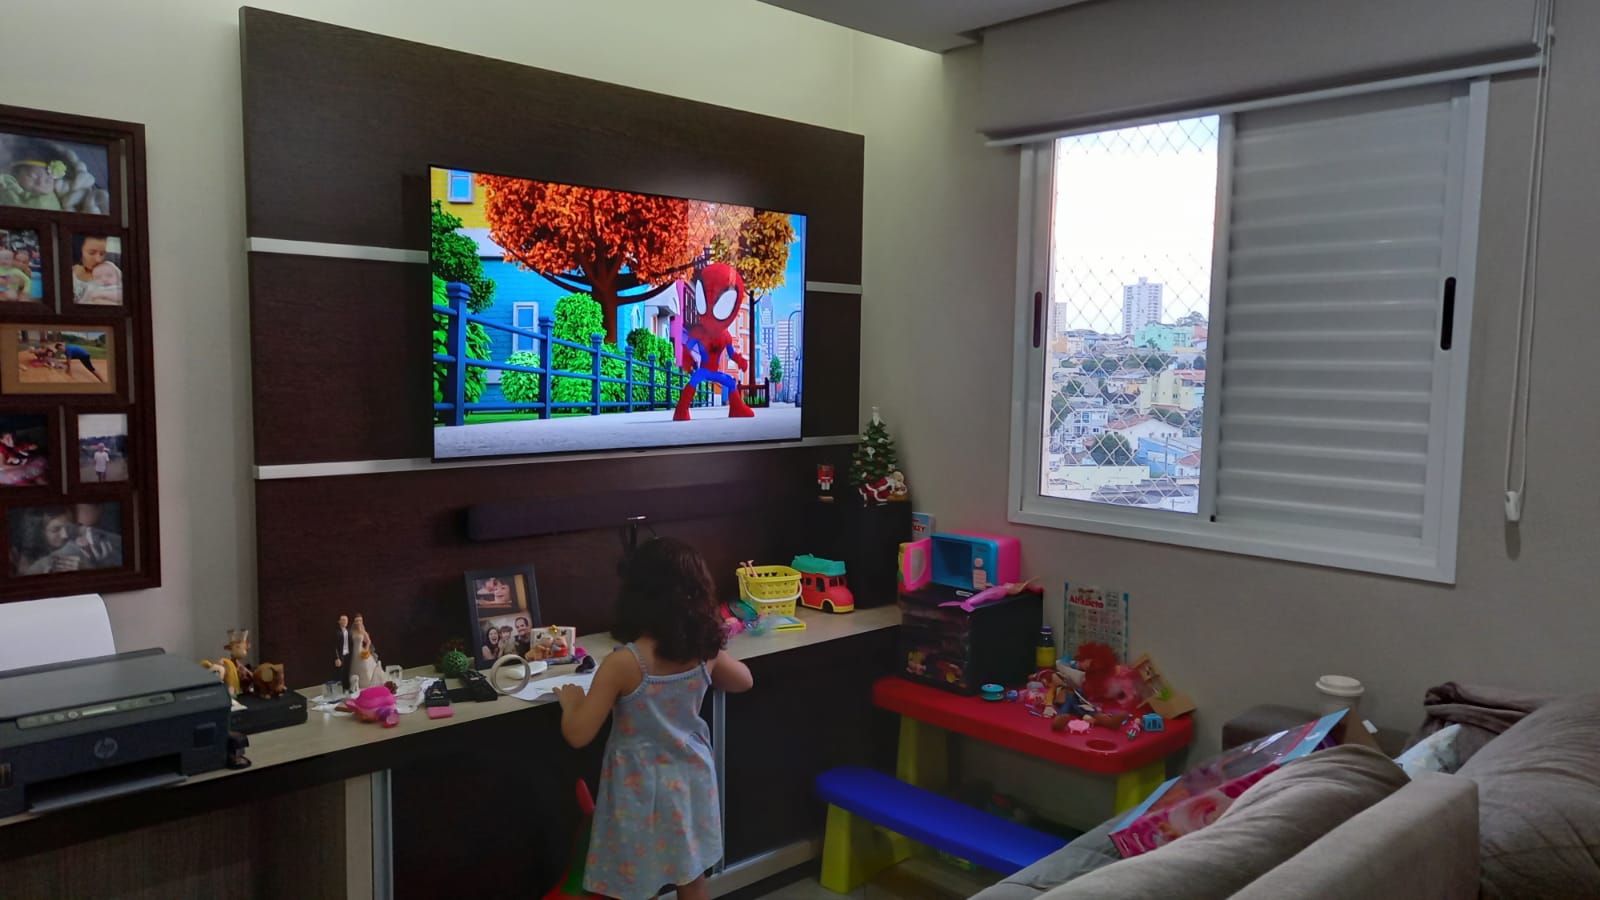 Fotografia de sala de televisão, com estante, uma televisão ligada transmitindo desenho infantil, ao seu lado uma mesa de brinquedos e à frente um sofá. Uma menina brinca em frente à televisão.